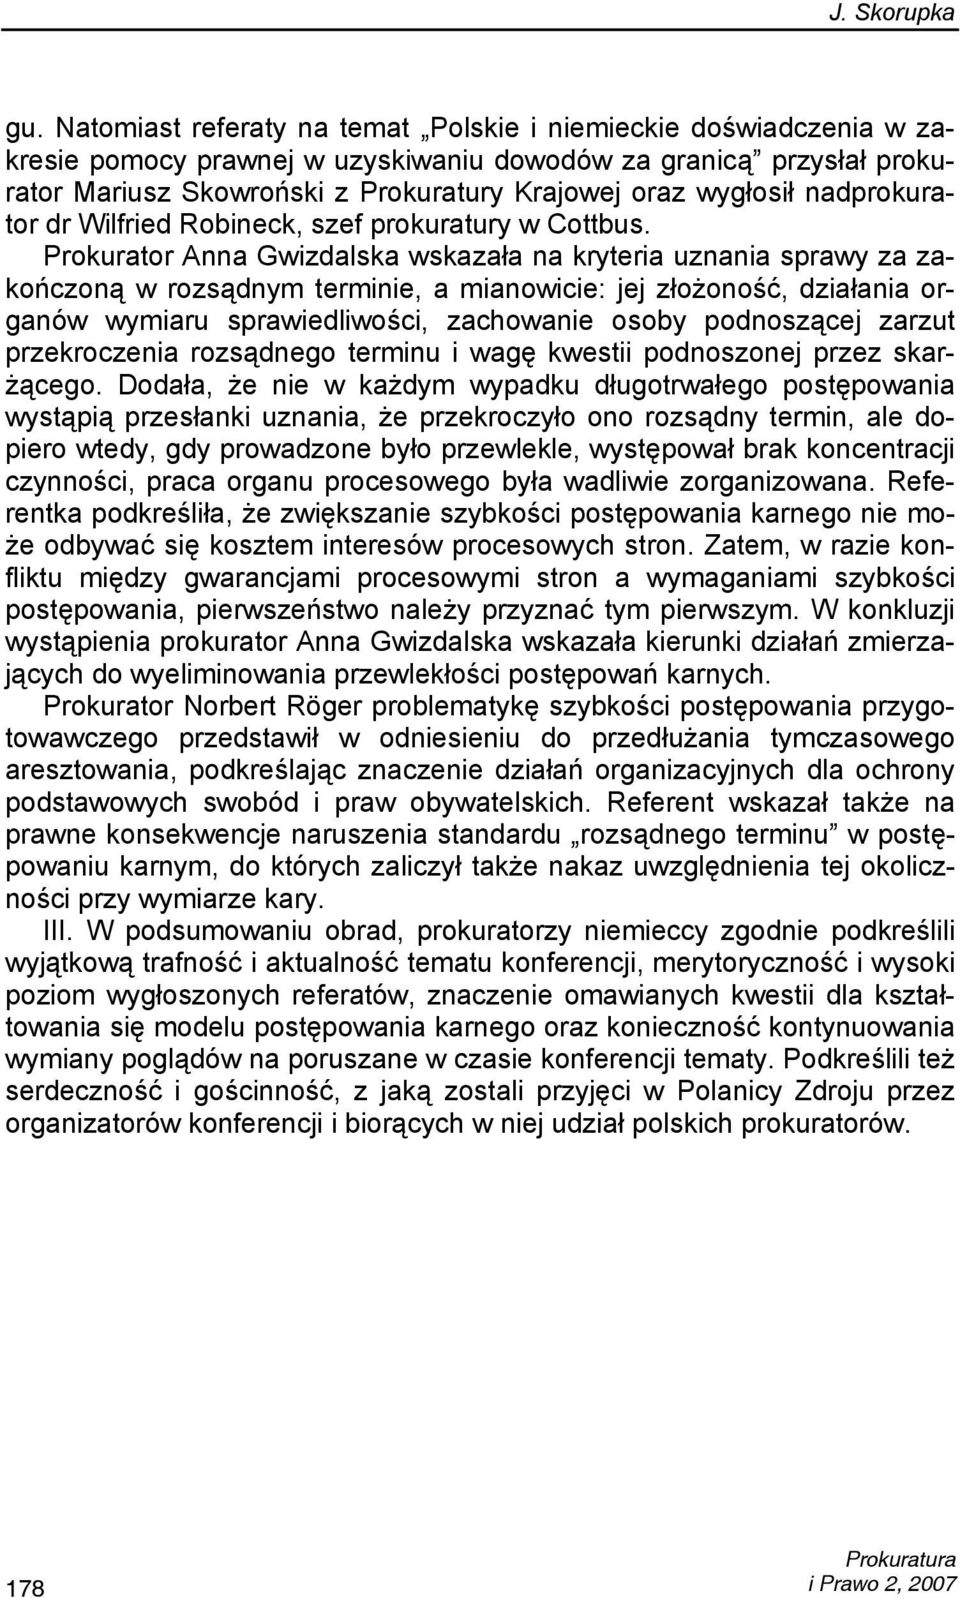 Prokurator Anna Gwizdalska wskazała na kryteria uznania sprawy za zakończoną w rozsądnym terminie, a mianowicie: jej złożoność, działania organów wymiaru sprawiedliwości, zachowanie osoby podnoszącej